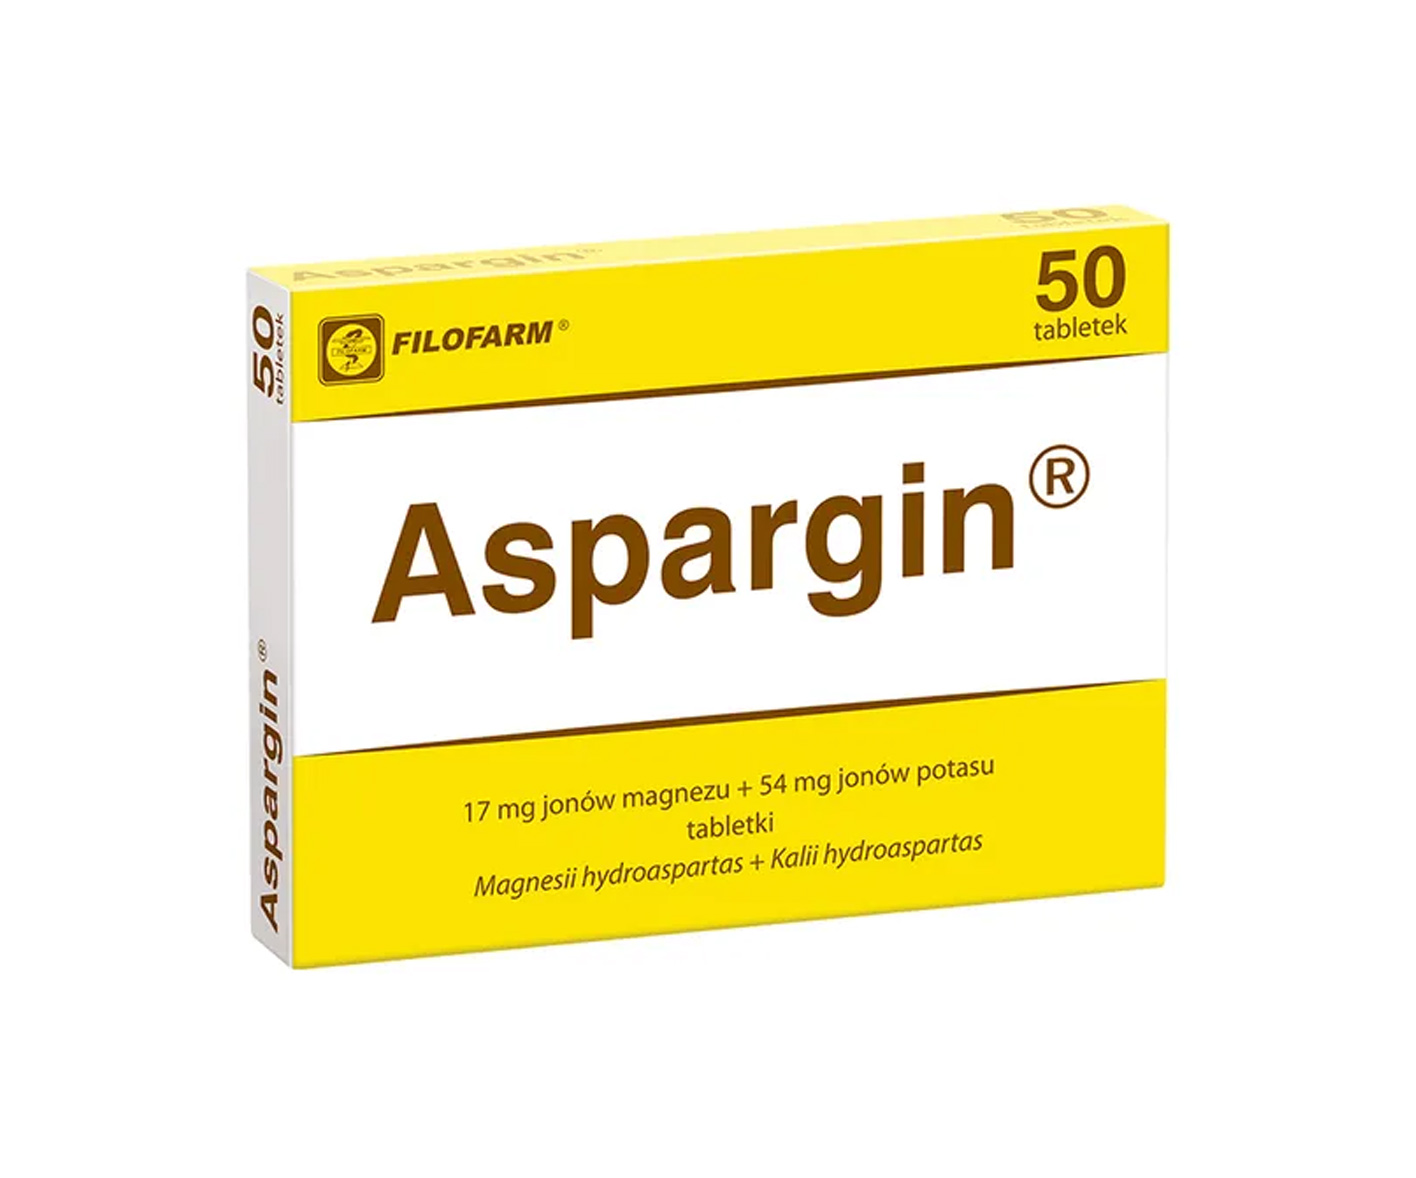  Filofarm, Aspargin, tabletki magnez + potas